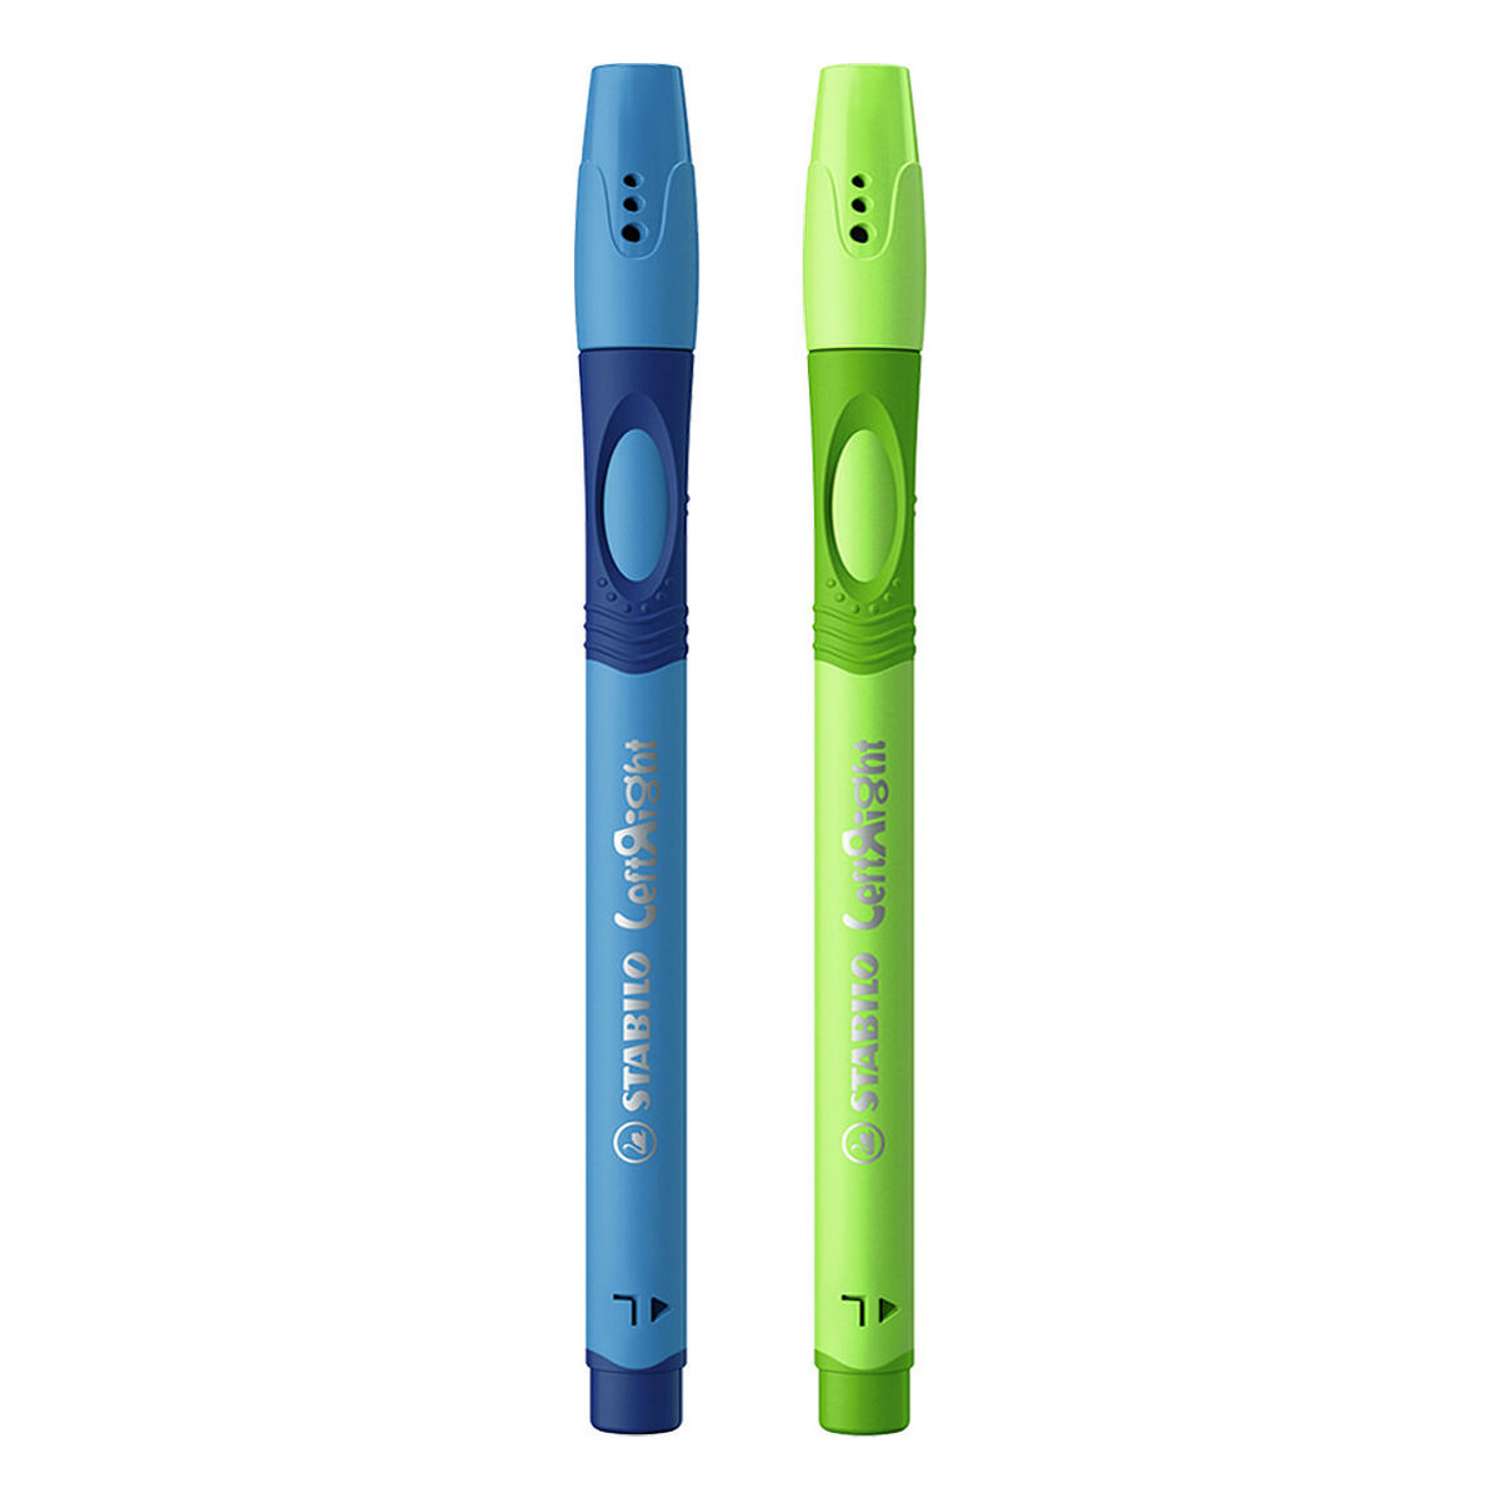 Ручка шариковая масляная STABILO LeftRight для левшей для обучения письму F синяя / корпус синий + зелёный 2штуки в пакете - фото 2